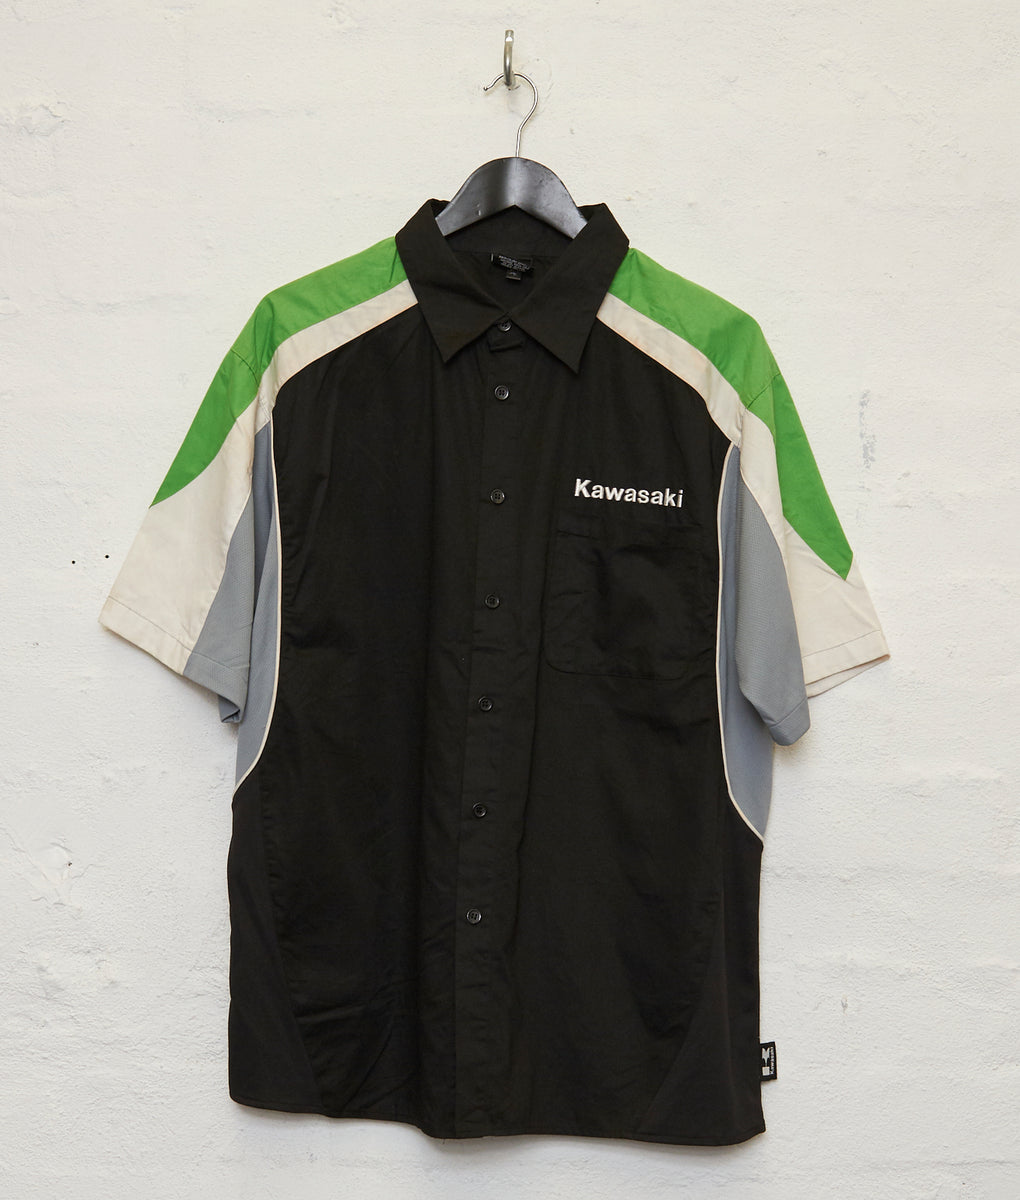 Kawasaki Racing Shirt (L)